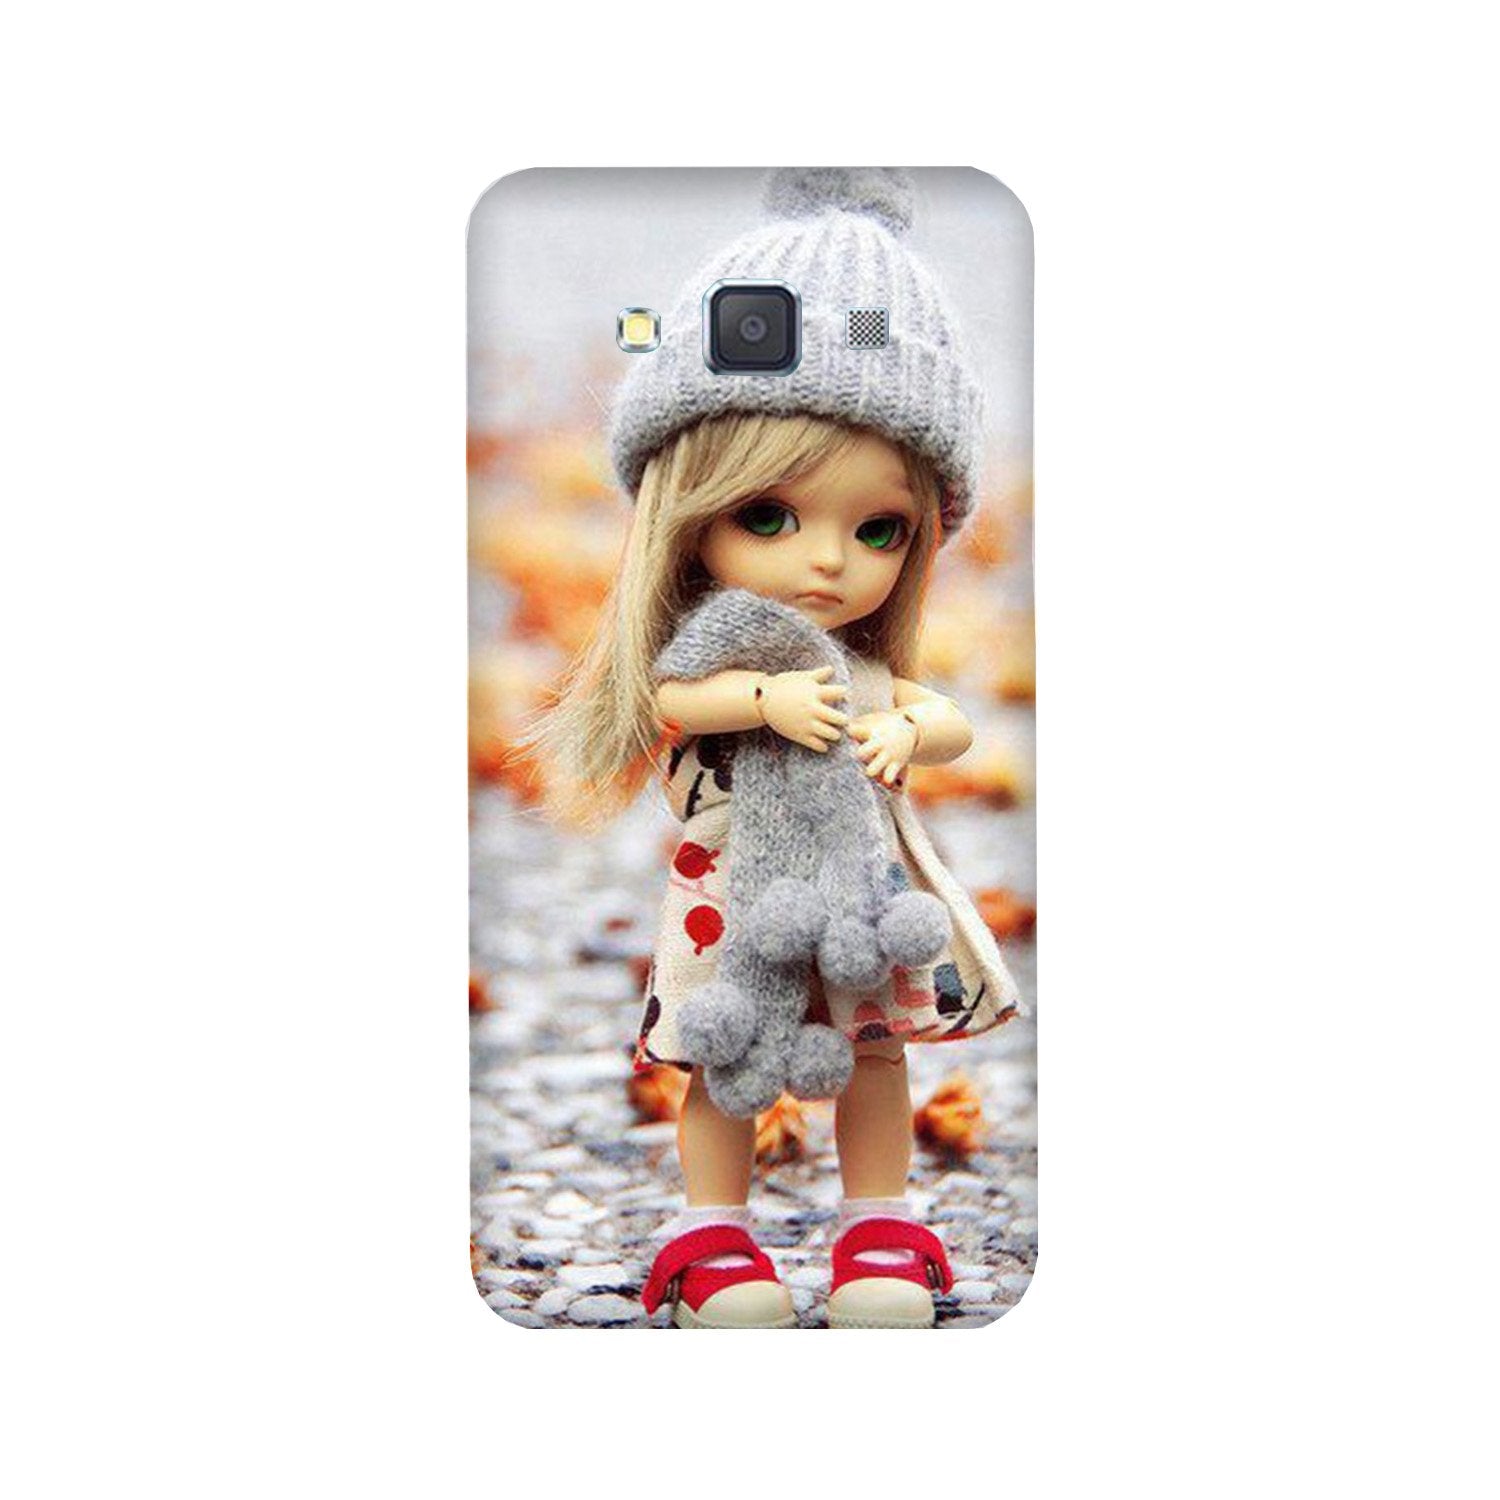 Cute Doll Case for Galaxy A8 (2015)